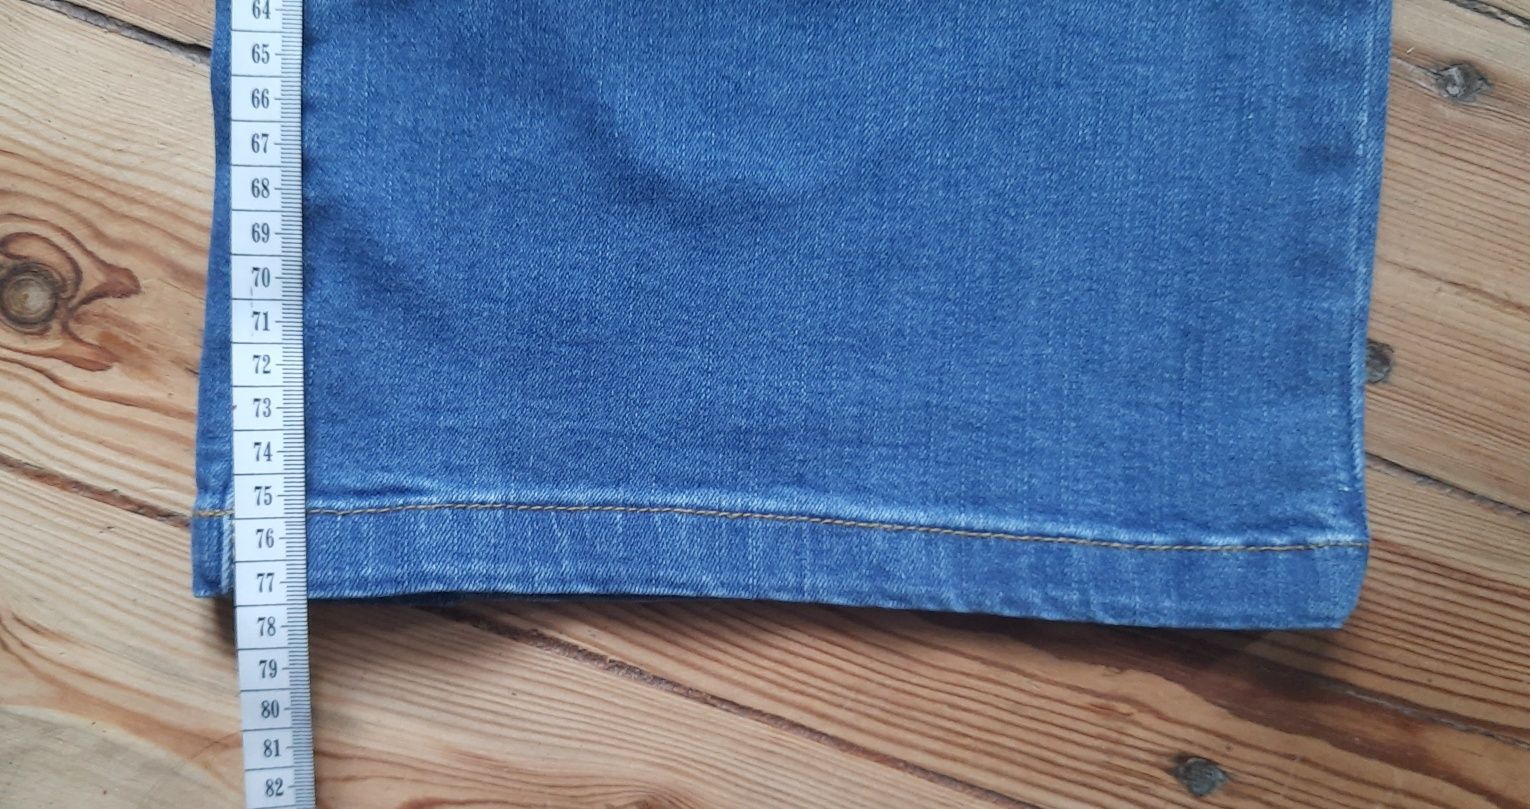 Spodnie jeansowe ciążowe na gumce B.p.c  rozmiar 40